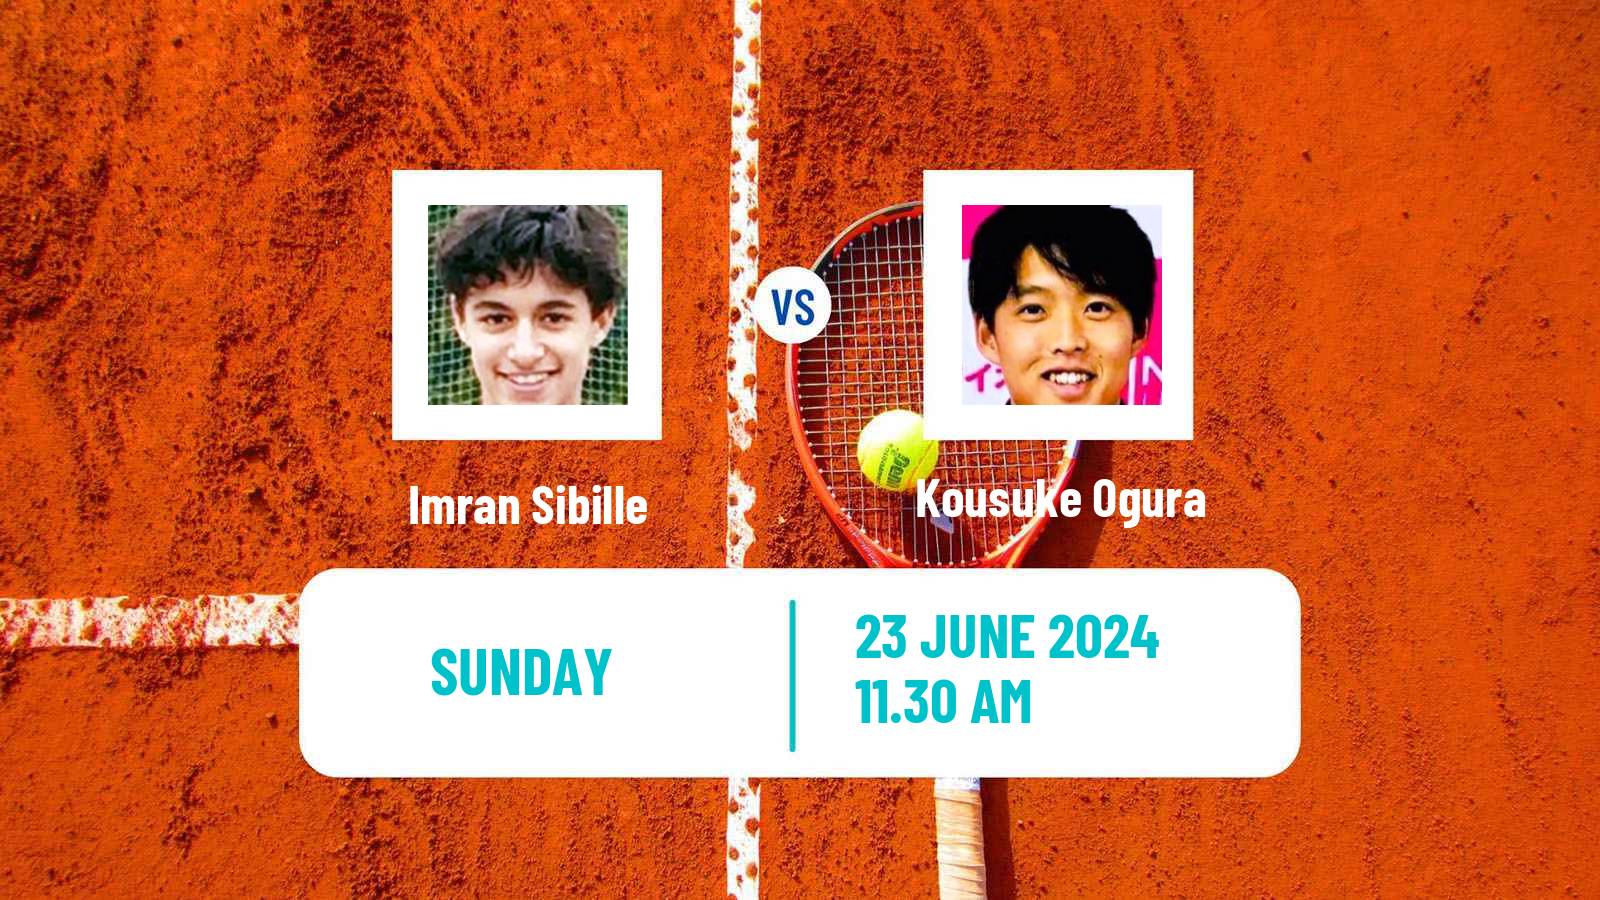 Tennis Ibague Challenger Men Imran Sibille - Kousuke Ogura